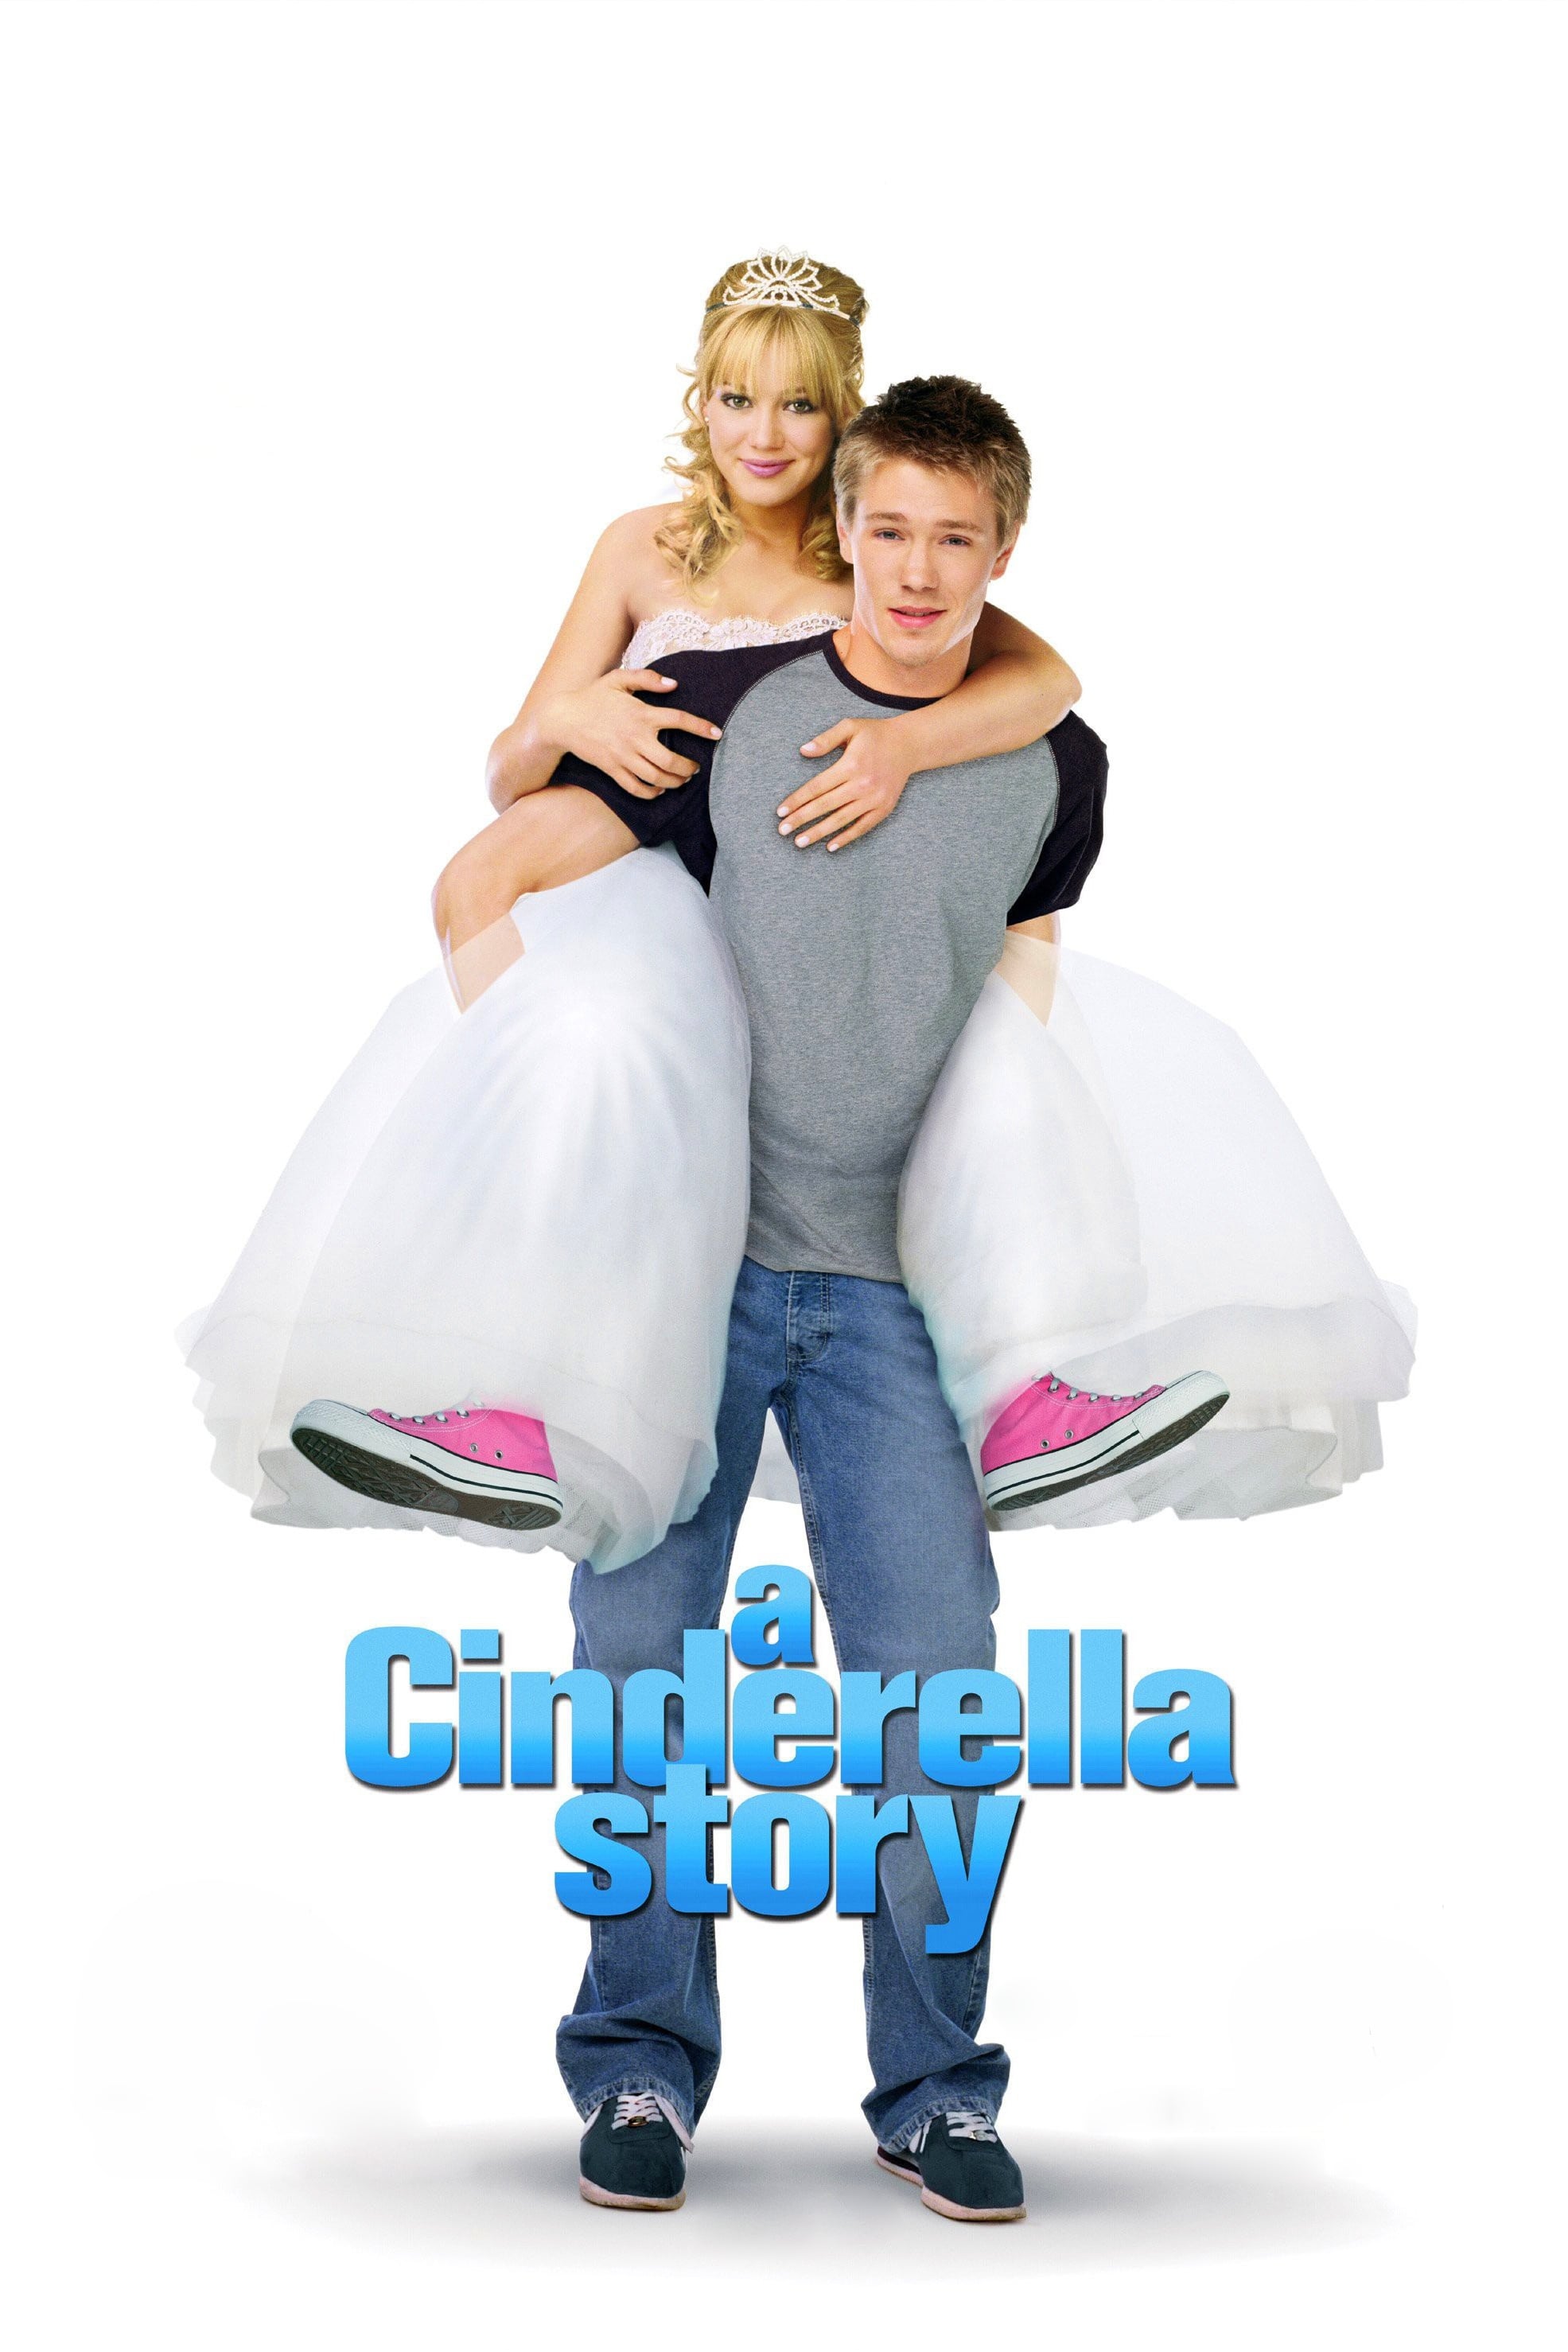 Locandina di "A Cinderella Story" (2004) in cui Hilary Duff indossa le Converse All Star rosa sotto un abito da principessa.